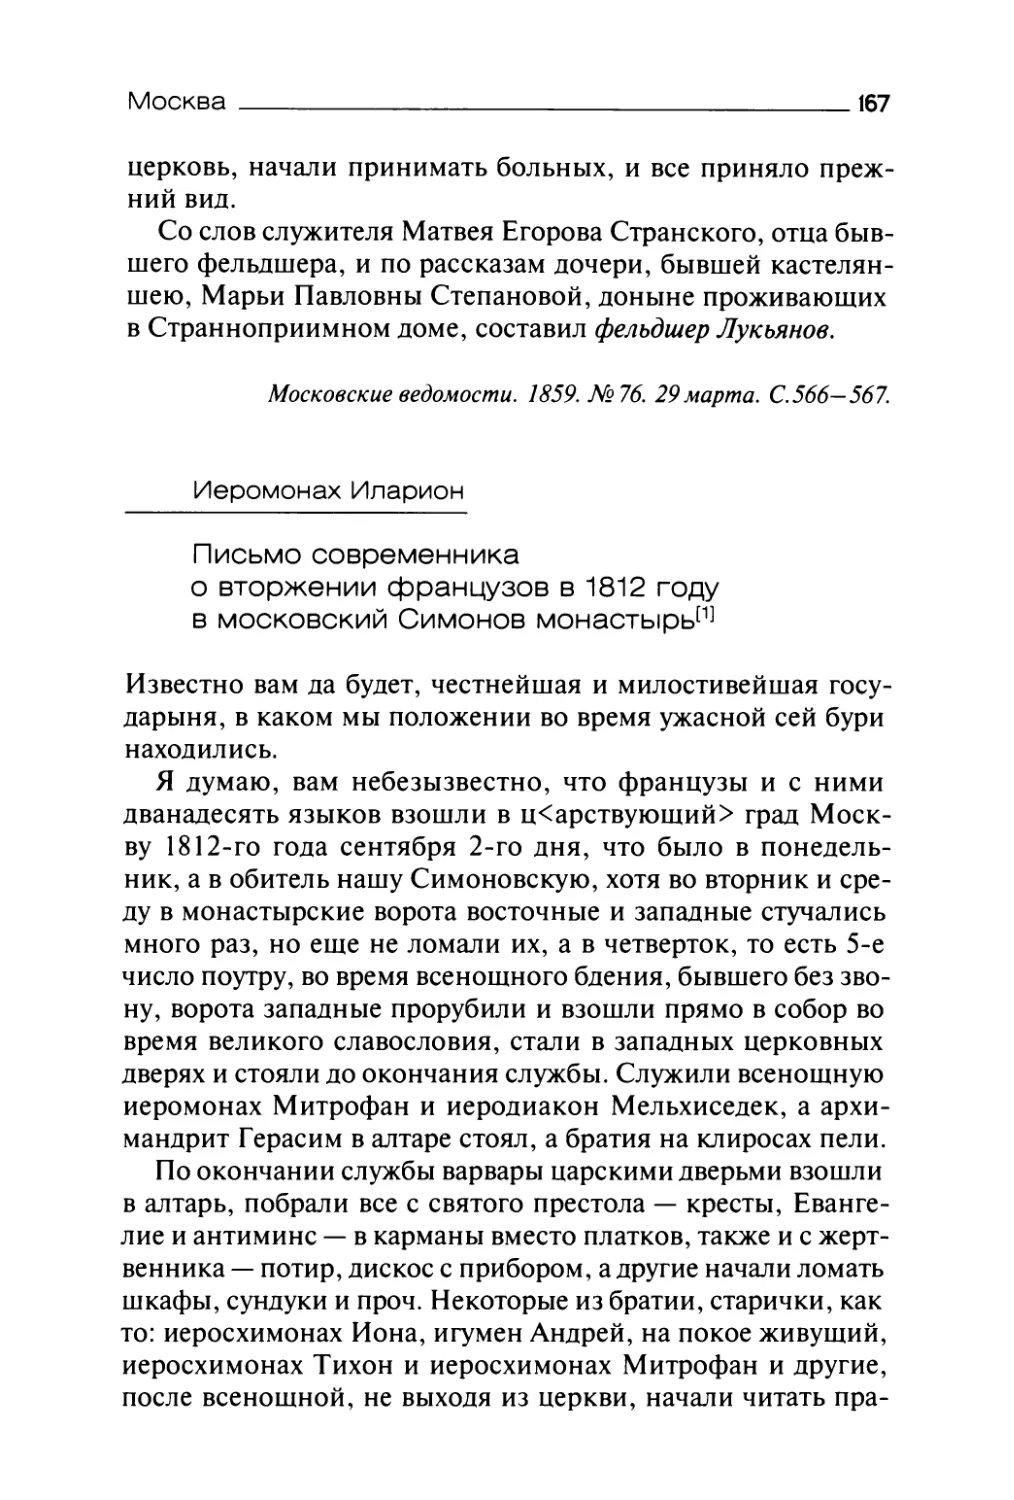 Иеромонах Иларион. Письмо современника о вторжении французов в 1812 году в московский Симонов монастырь